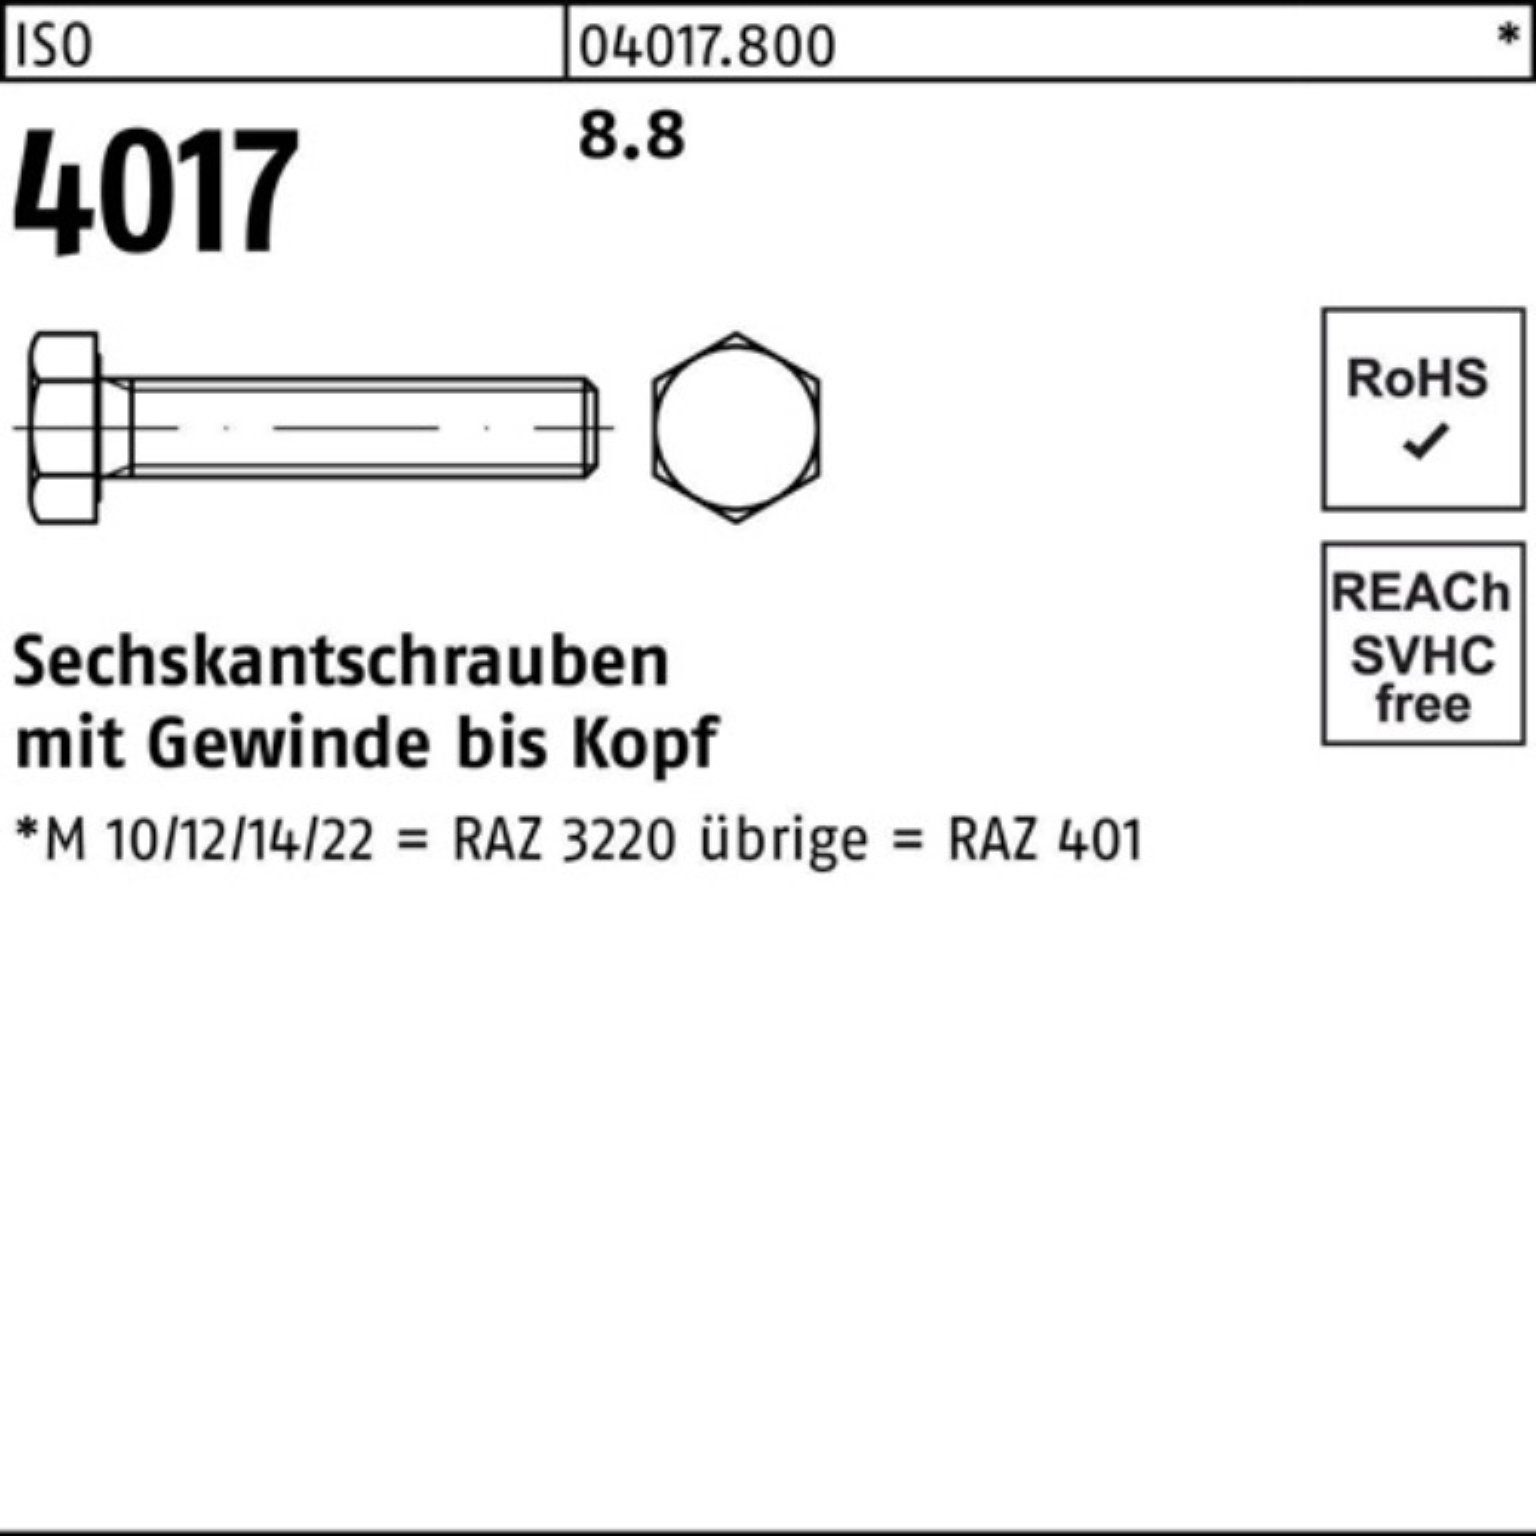 Bufab Sechskantschraube Stück 401 60 8.8 Pack 4017 ISO Sechskantschraube 200 VG 200er M5x ISO